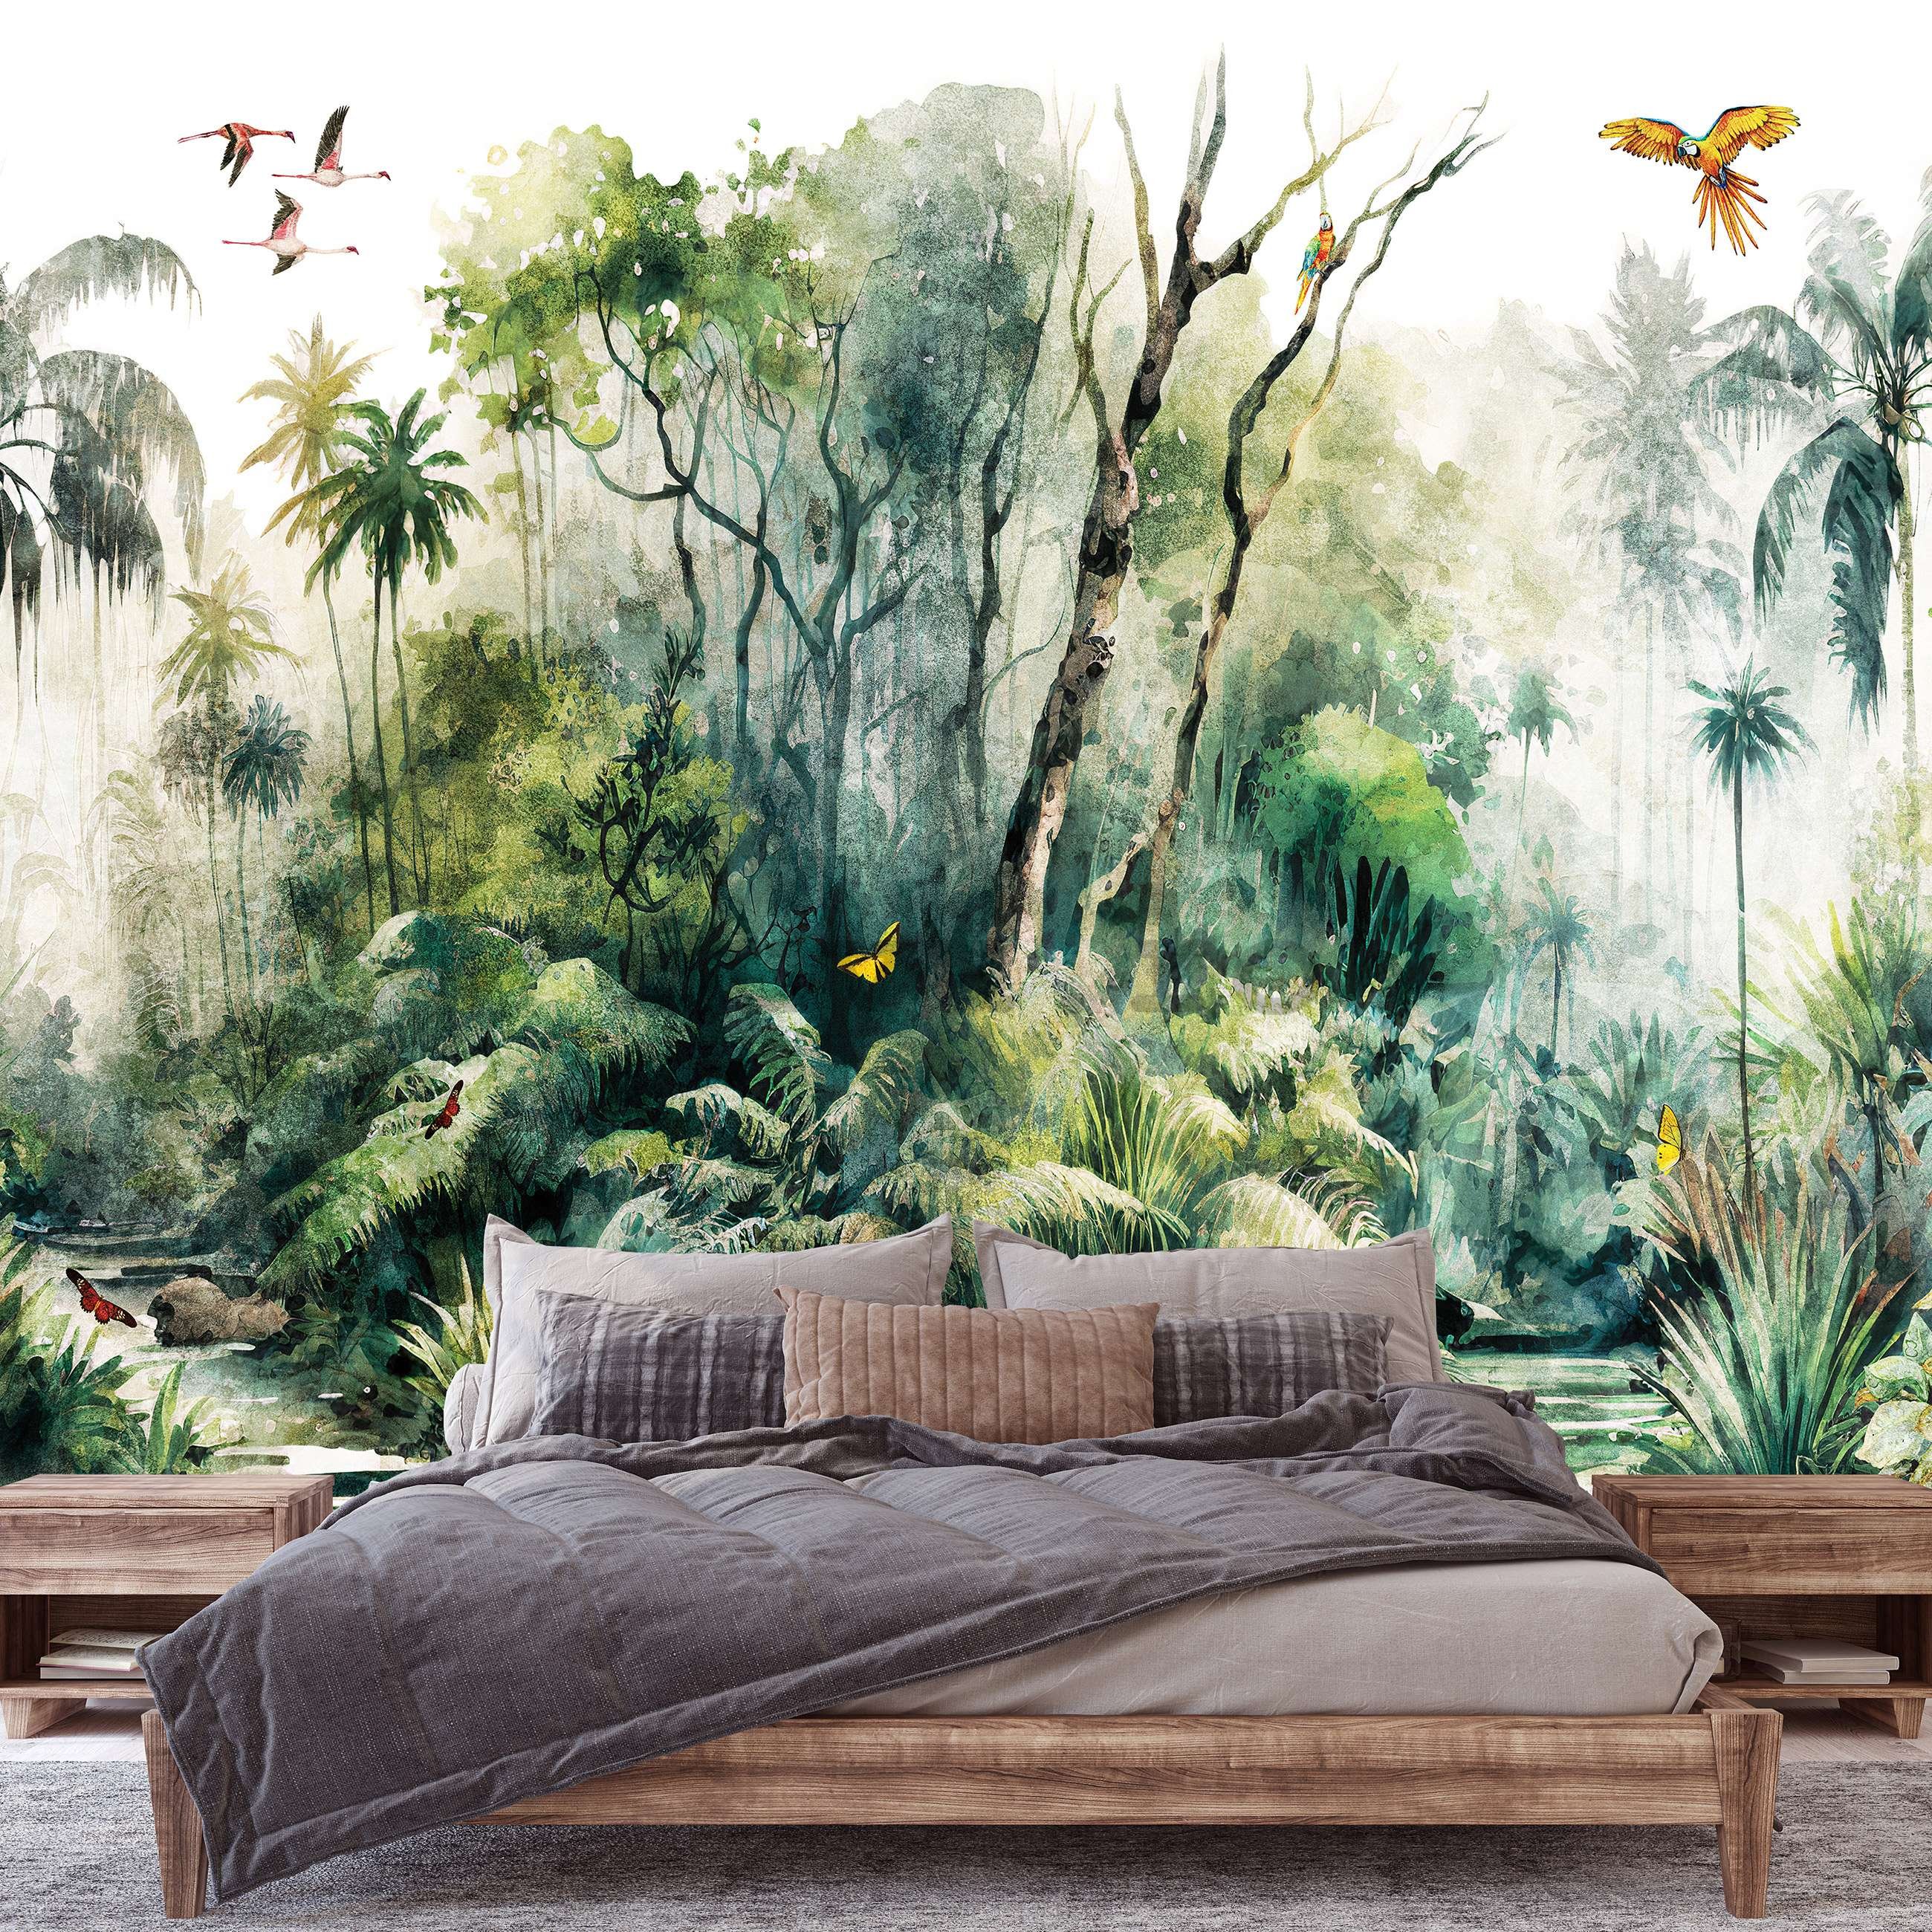 Fototapet vlies: În pădurea tropicală (pictat) - 416x254 cm